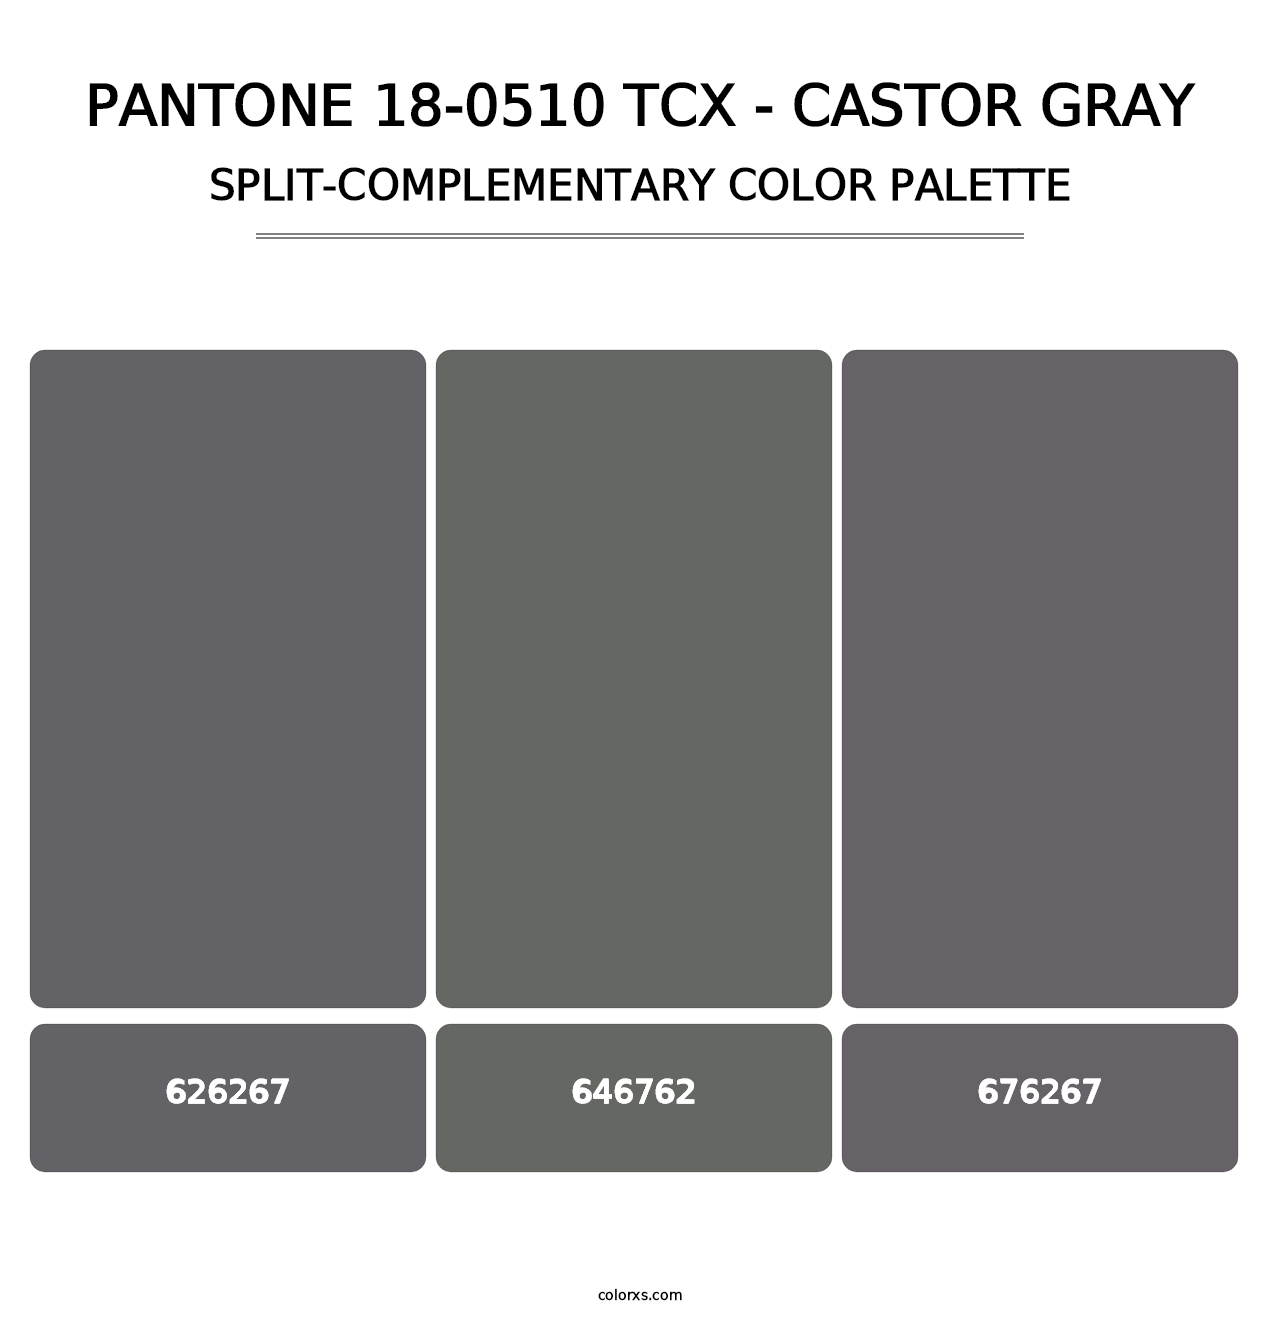 PANTONE 18-0510 TCX - Castor Gray - Split-Complementary Color Palette